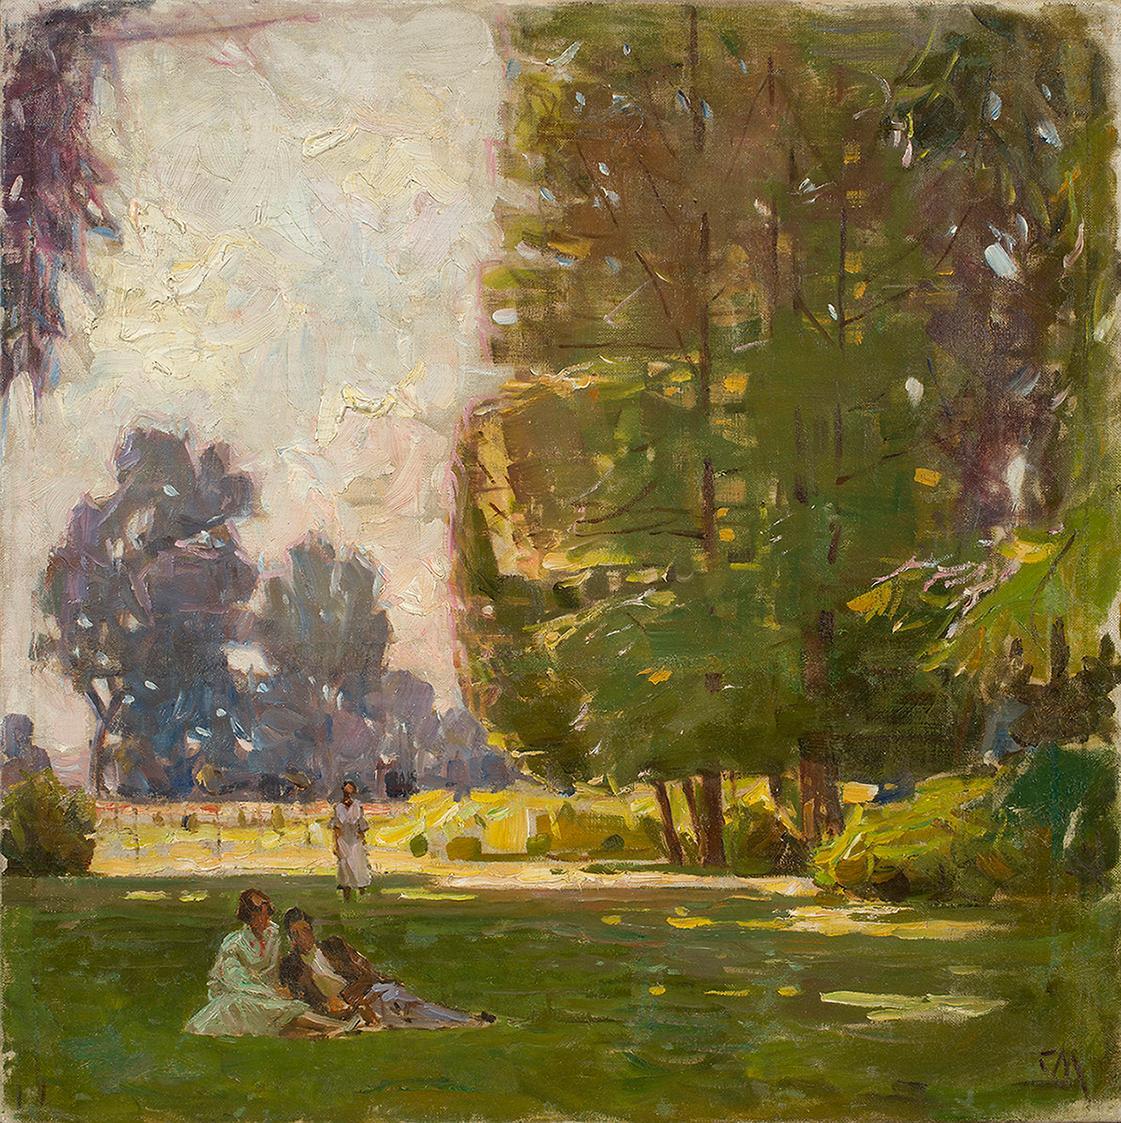 Carl Moll, Im Park, 1919 um, Öl auf Leinwand, 60,2 × 60 cm, Galerie Kovacek & Zetter, Wien